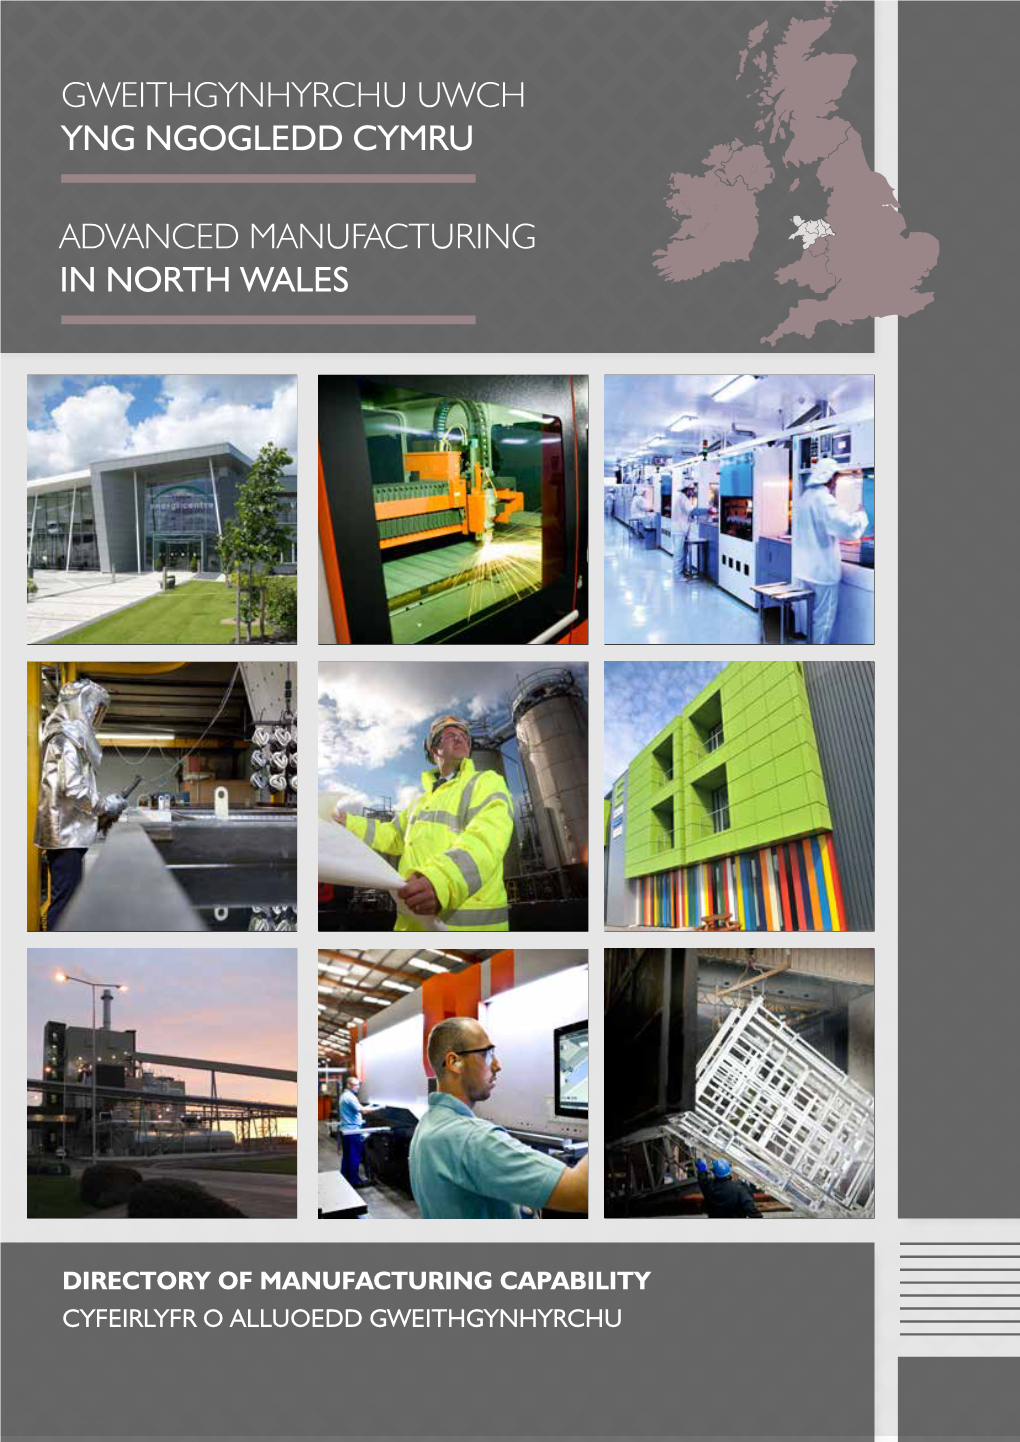 Advanced Manufacturing in North Wales Gweithgynhyrchu Uwch Yng Ngogledd Cymru A